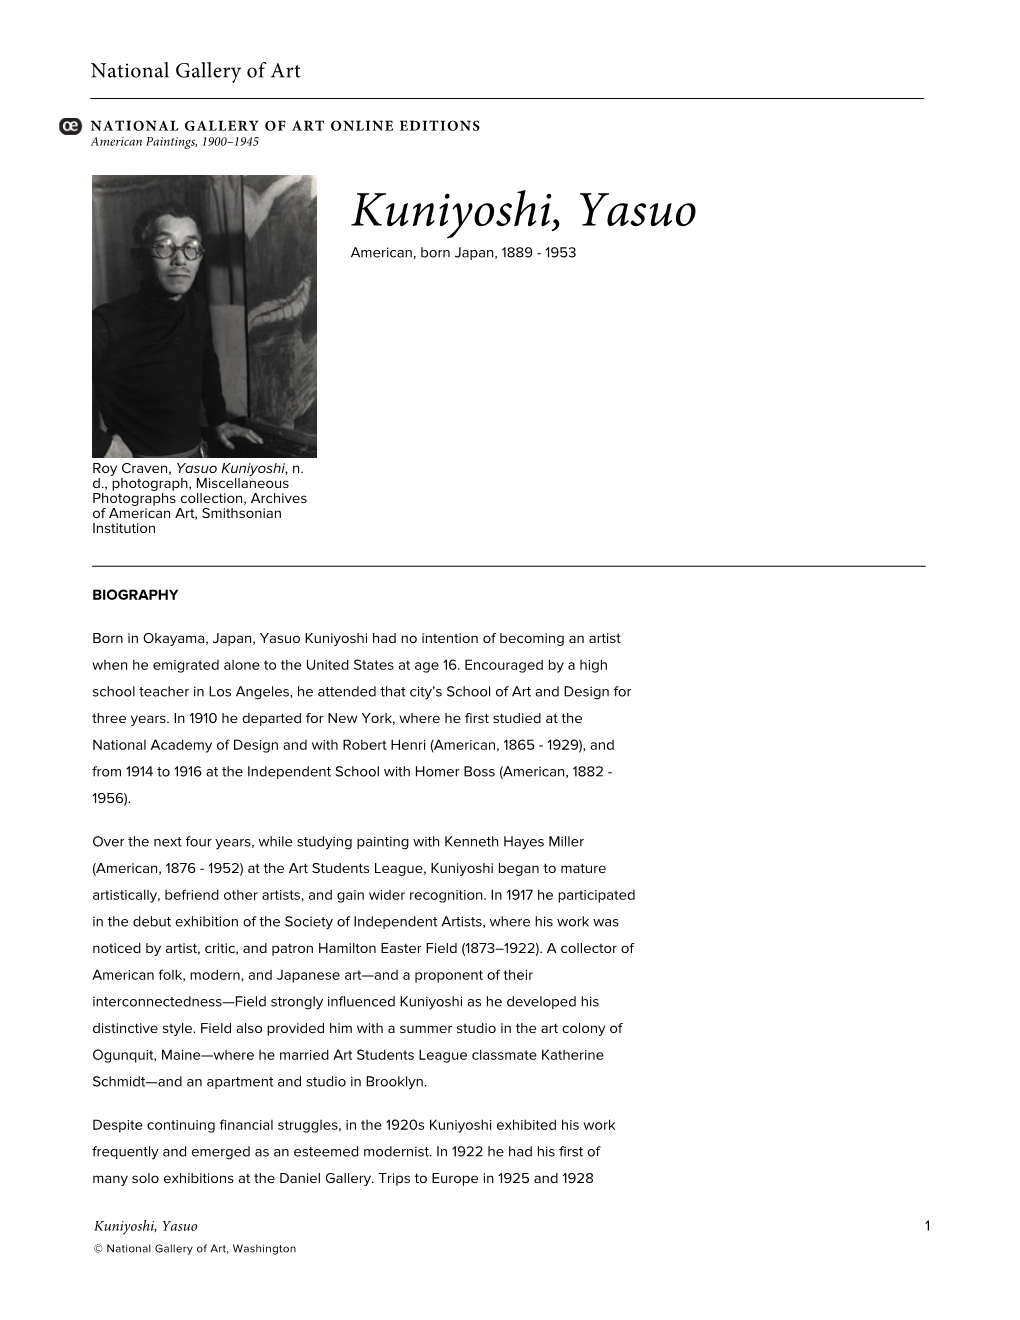 Kuniyoshi, Yasuo American, Born Japan, 1889 - 1953